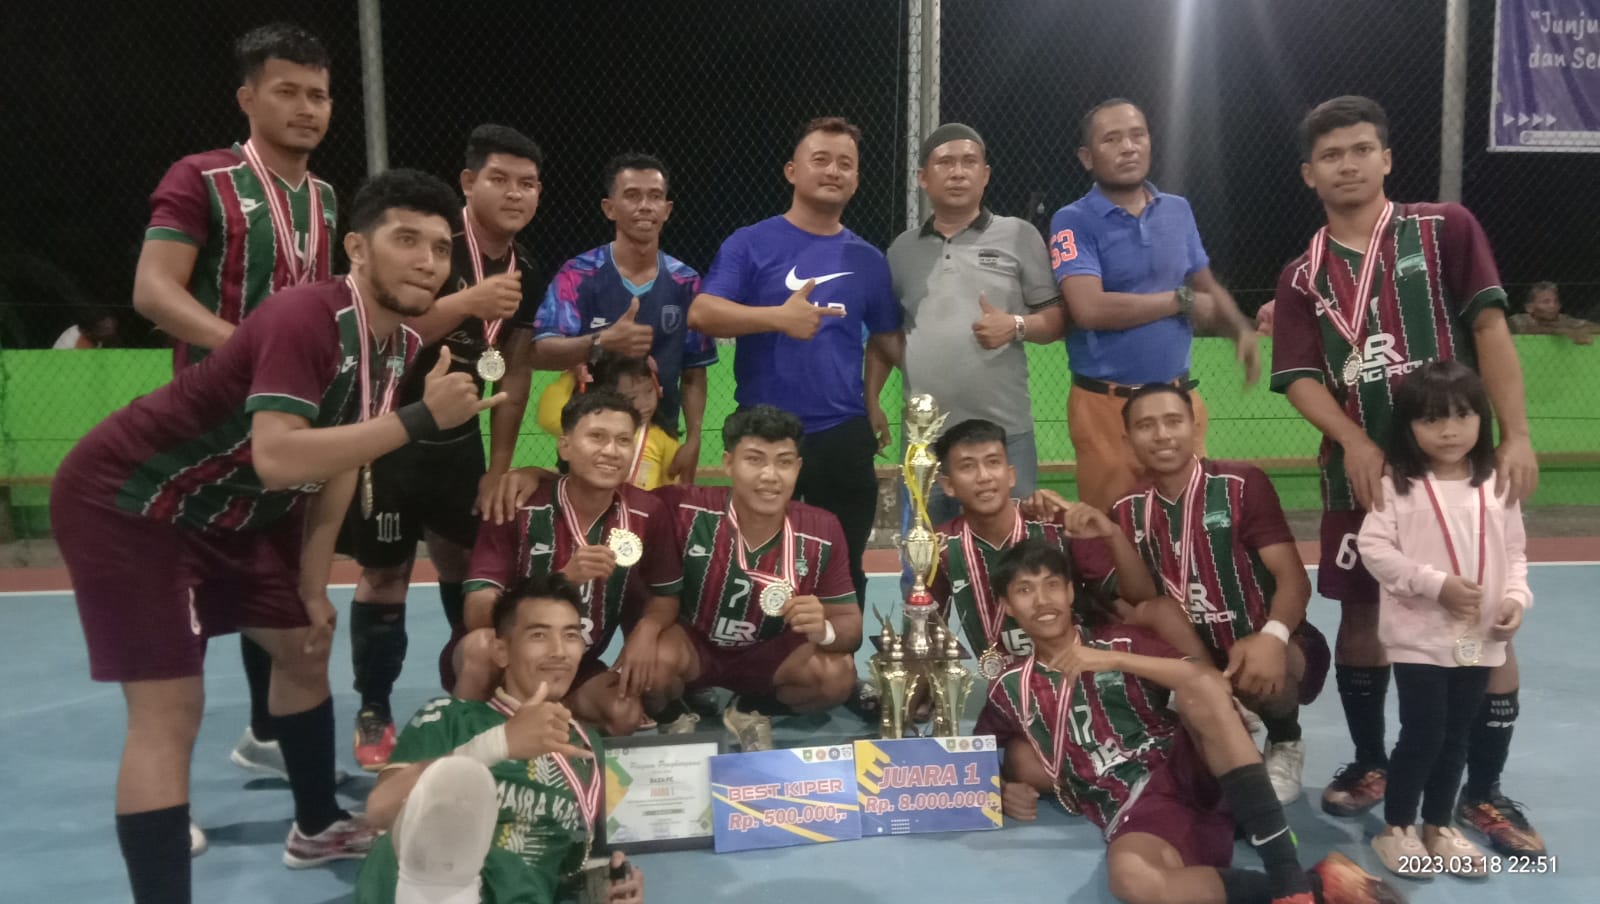 Turnamen Futsal Karang Taruna DSW Cup Sukses, Dotri Syahdan Bangga